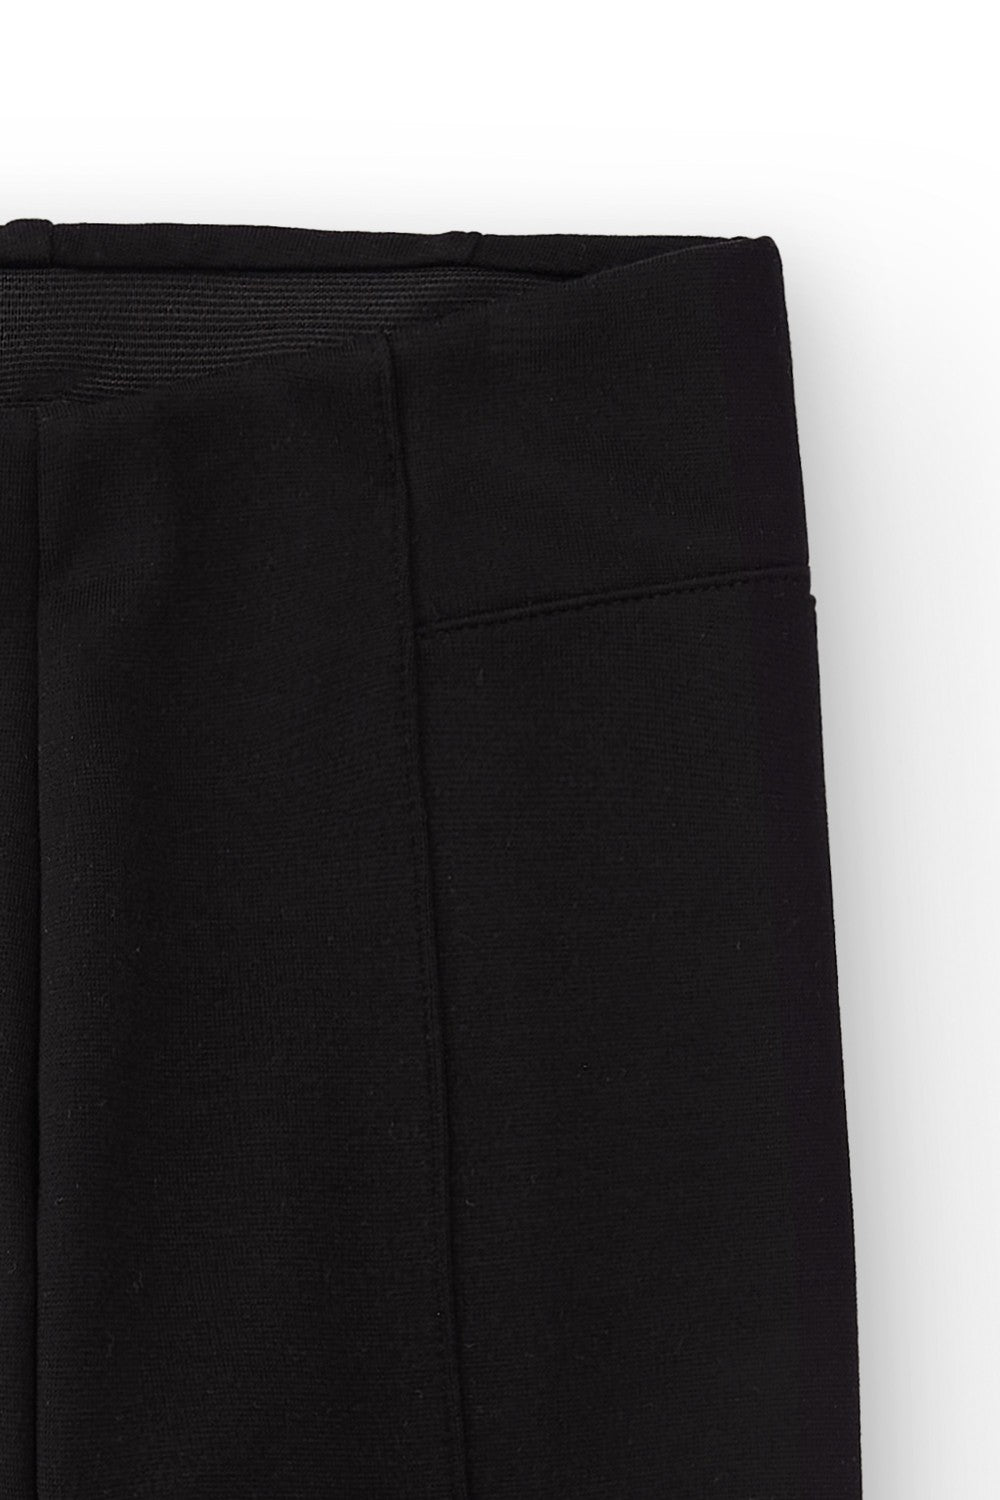 Pantalón de niña color negro Charanga